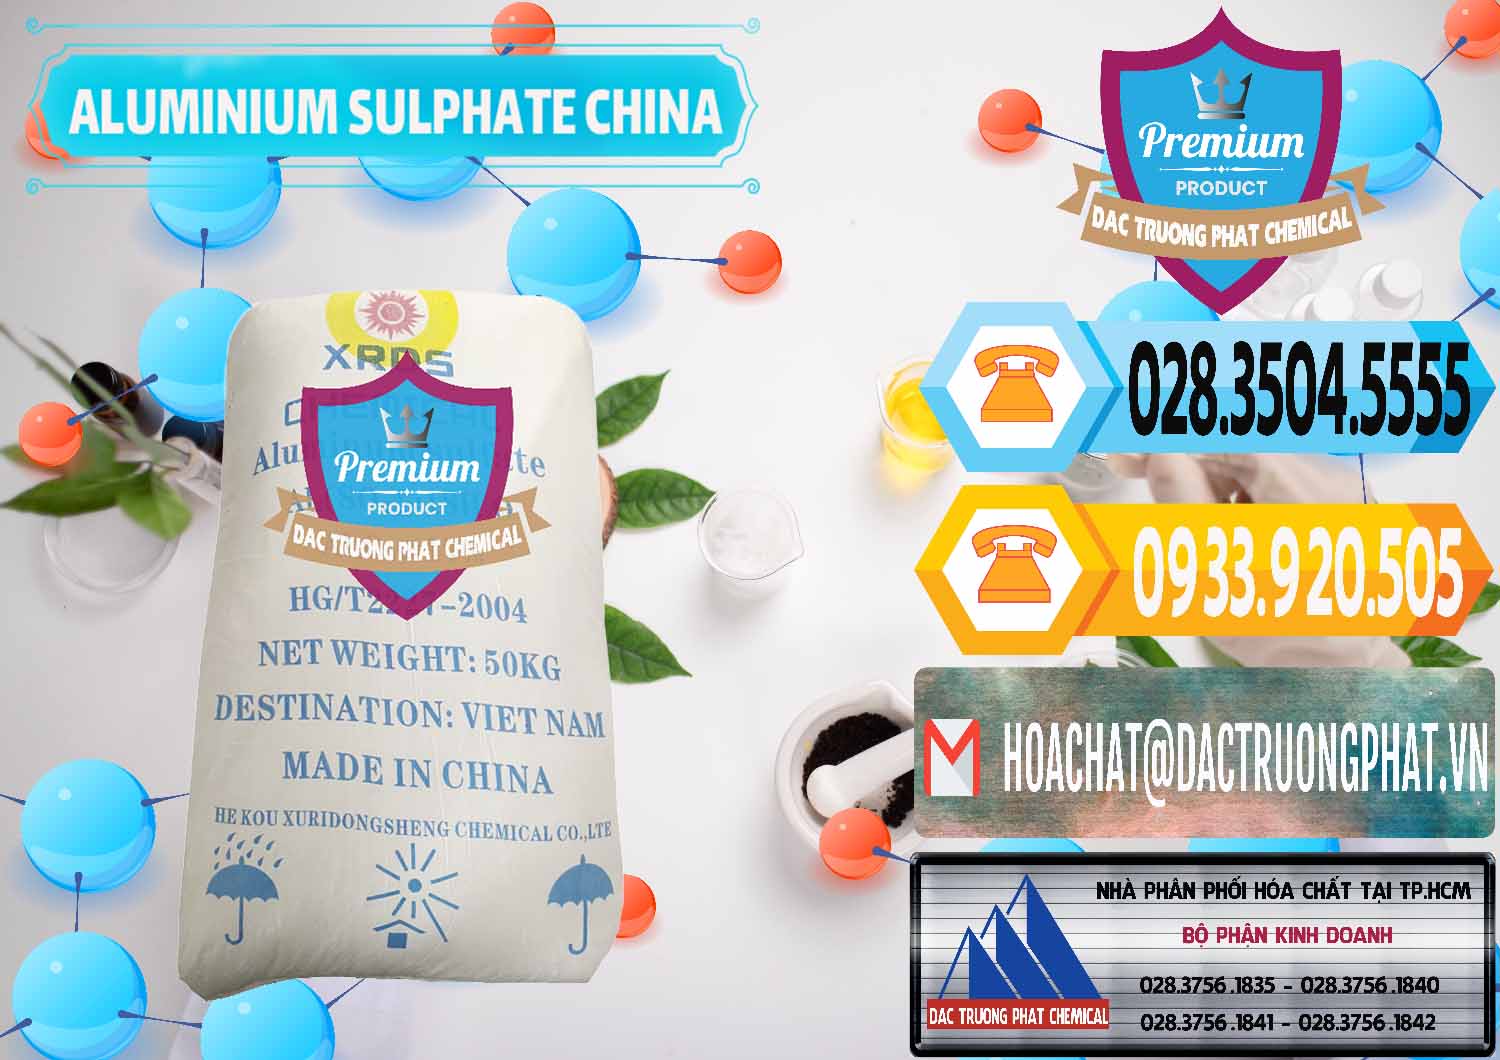 Công ty cung cấp - bán Phèn Nhôm - Al2(SO4)3 17% Trung Quốc China - 0464 - Chuyên bán _ phân phối hóa chất tại TP.HCM - hoachattayrua.net